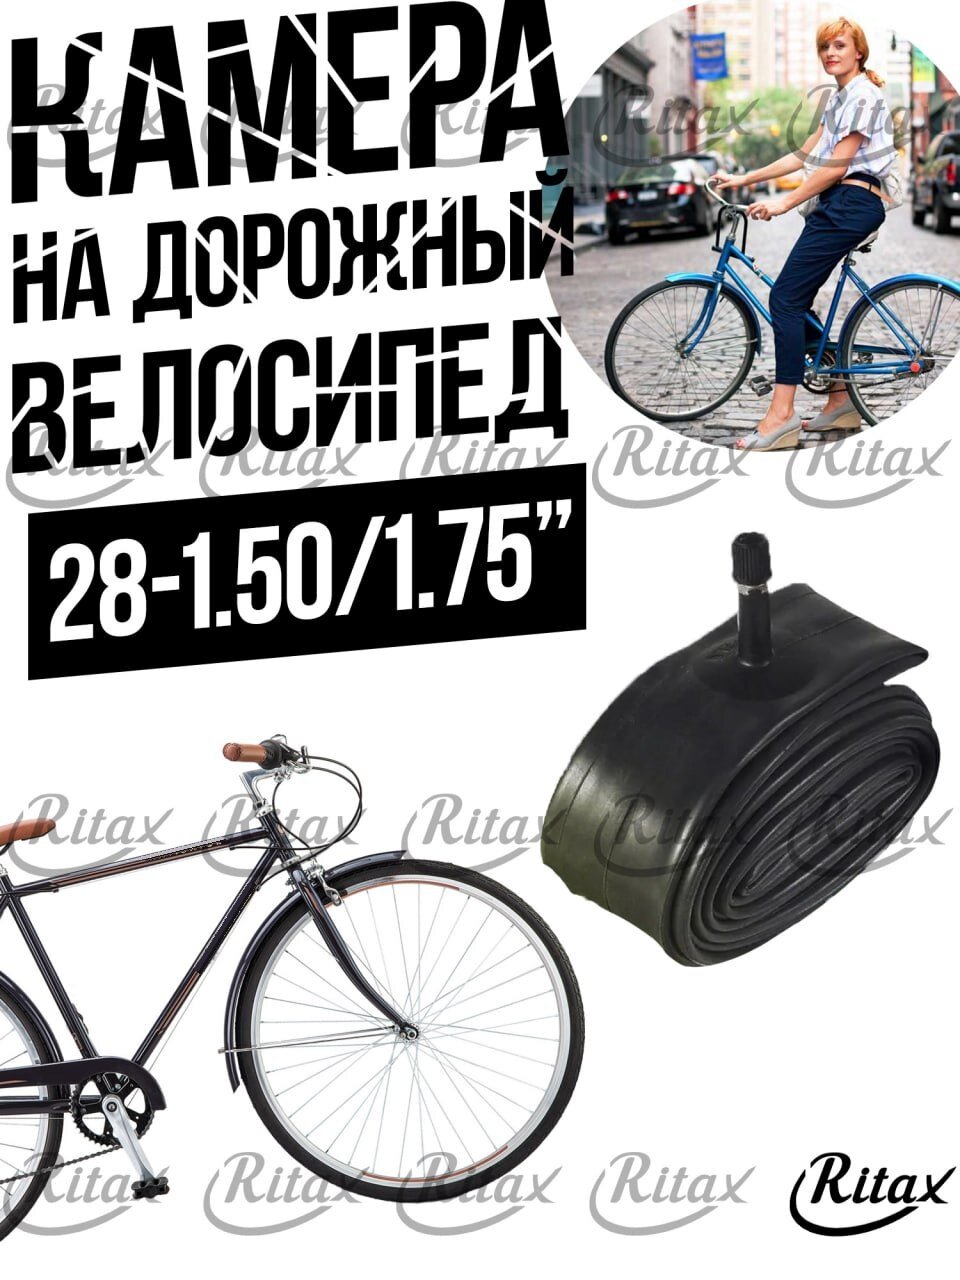 Камера Вело 28-1.50/1.75" Ritax натуральная резина, автониппель/ дорожный велосипед